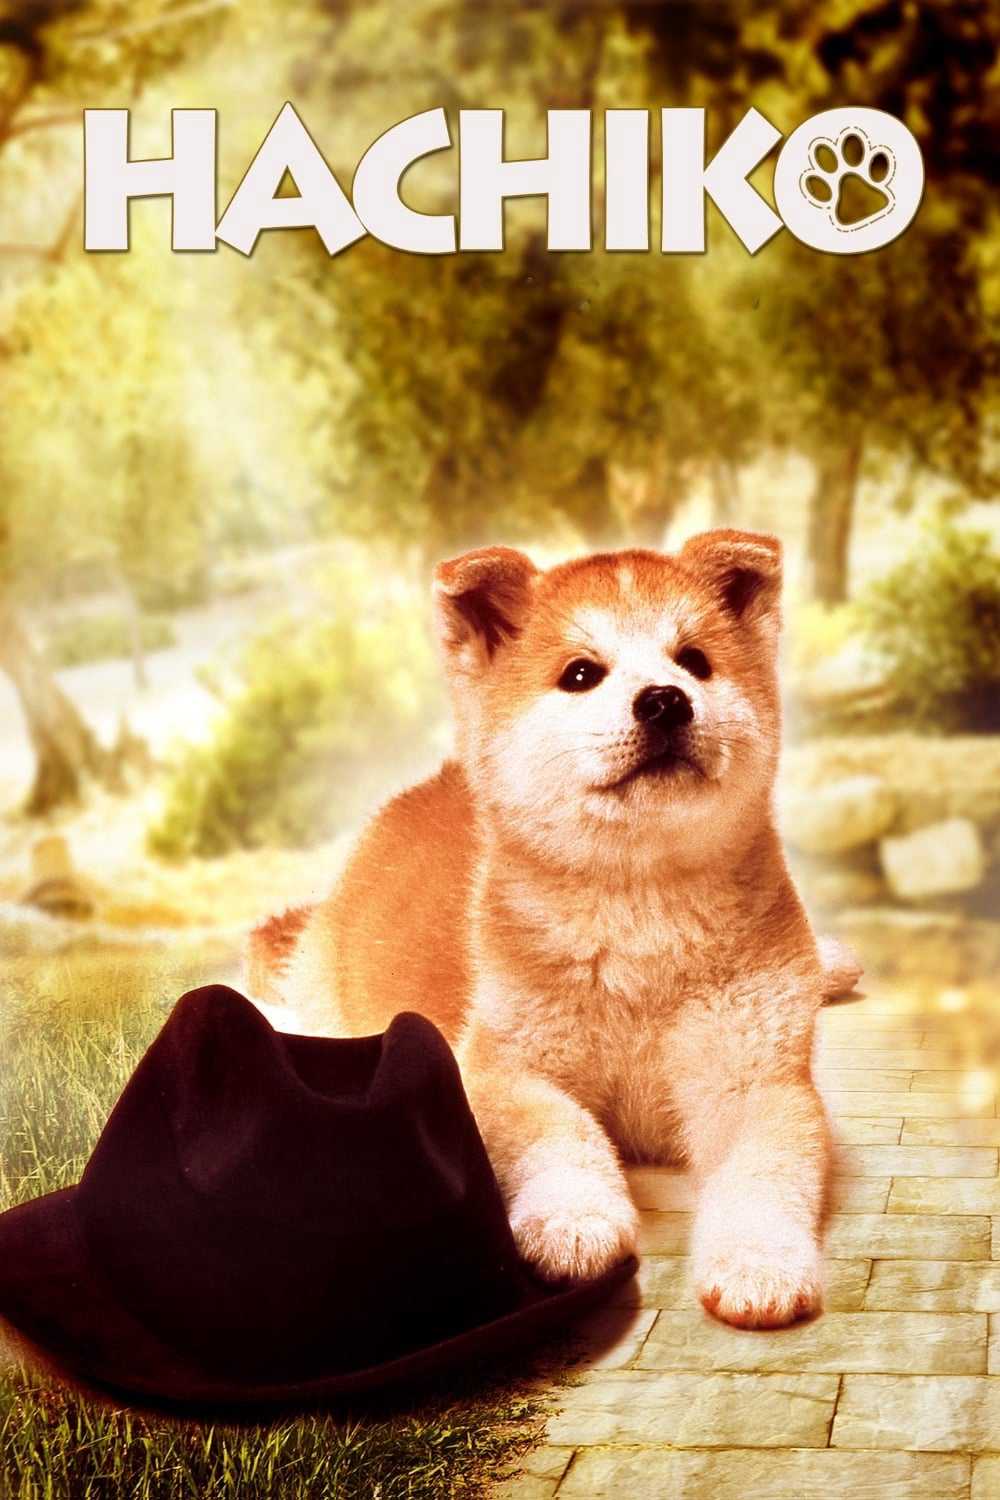 Câu Chuyện Về Chú Chó Hachiko - Hachi-ko